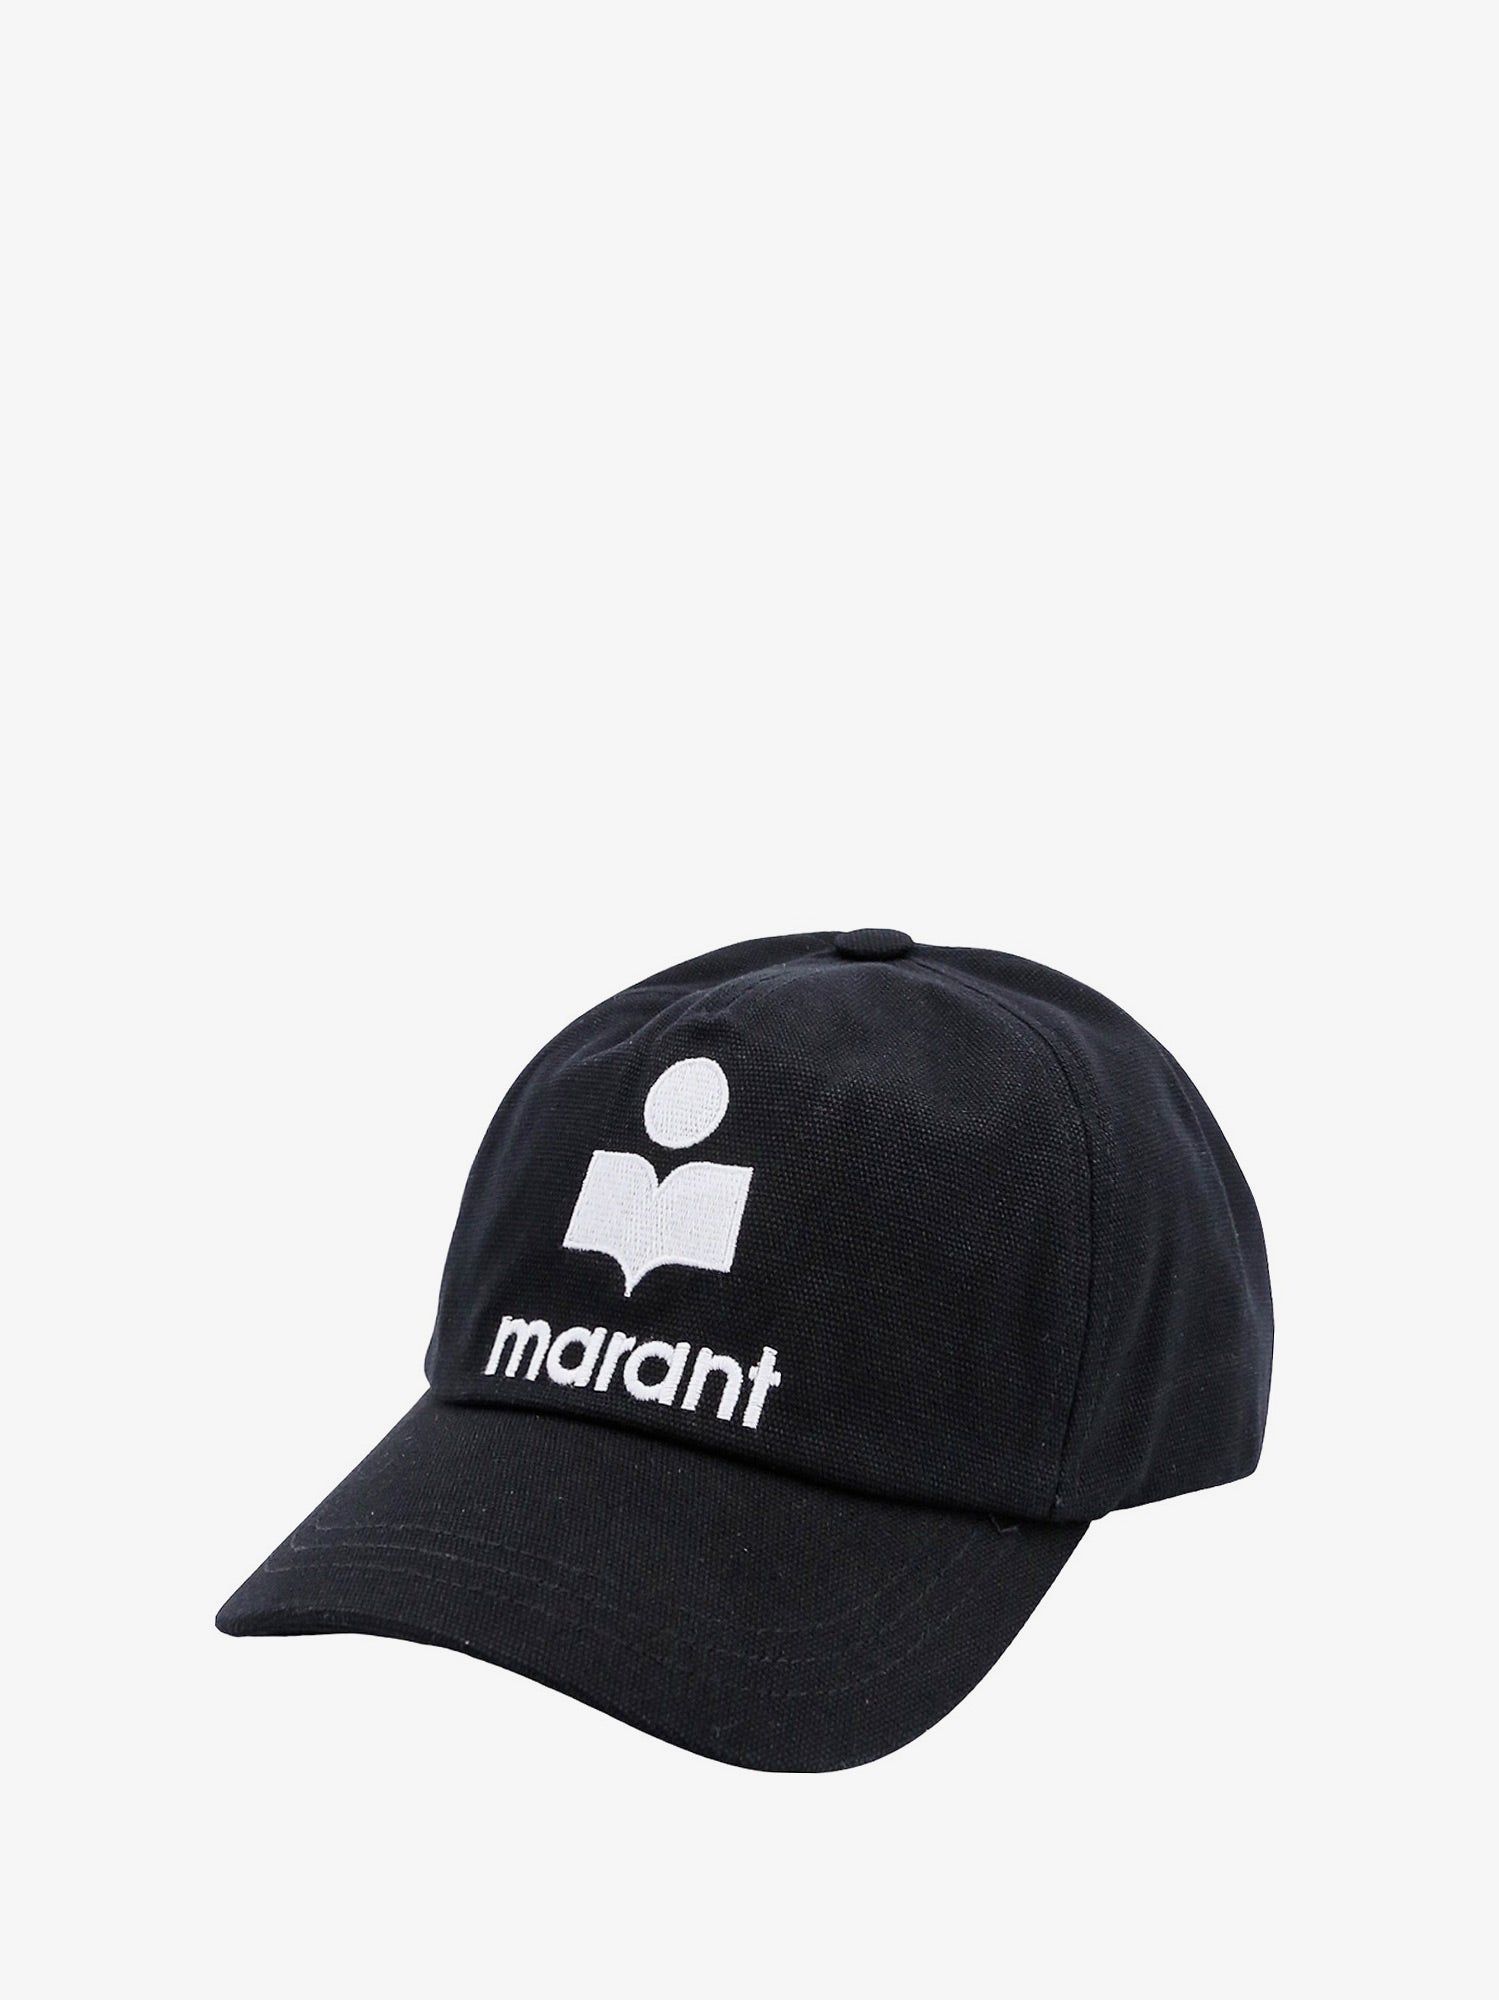 HAT